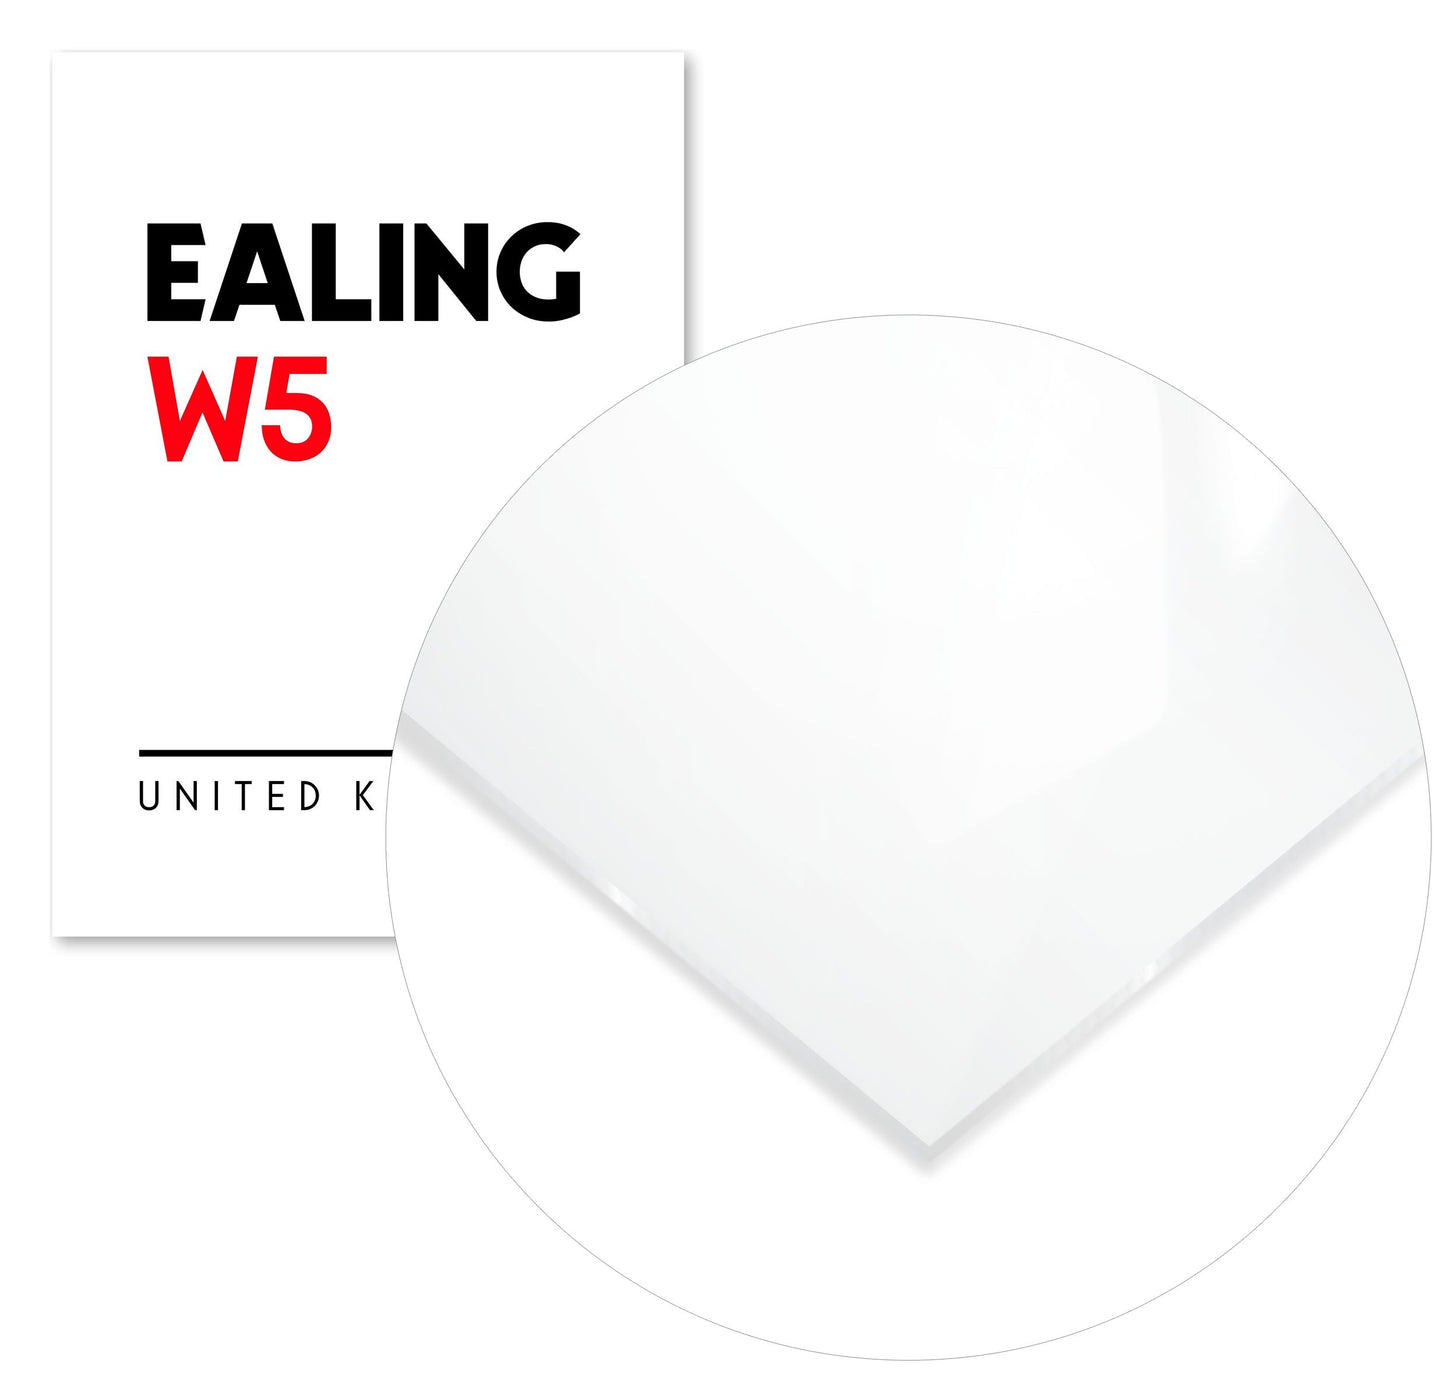 Ealing W5 Postal Code - @VickyHanggara